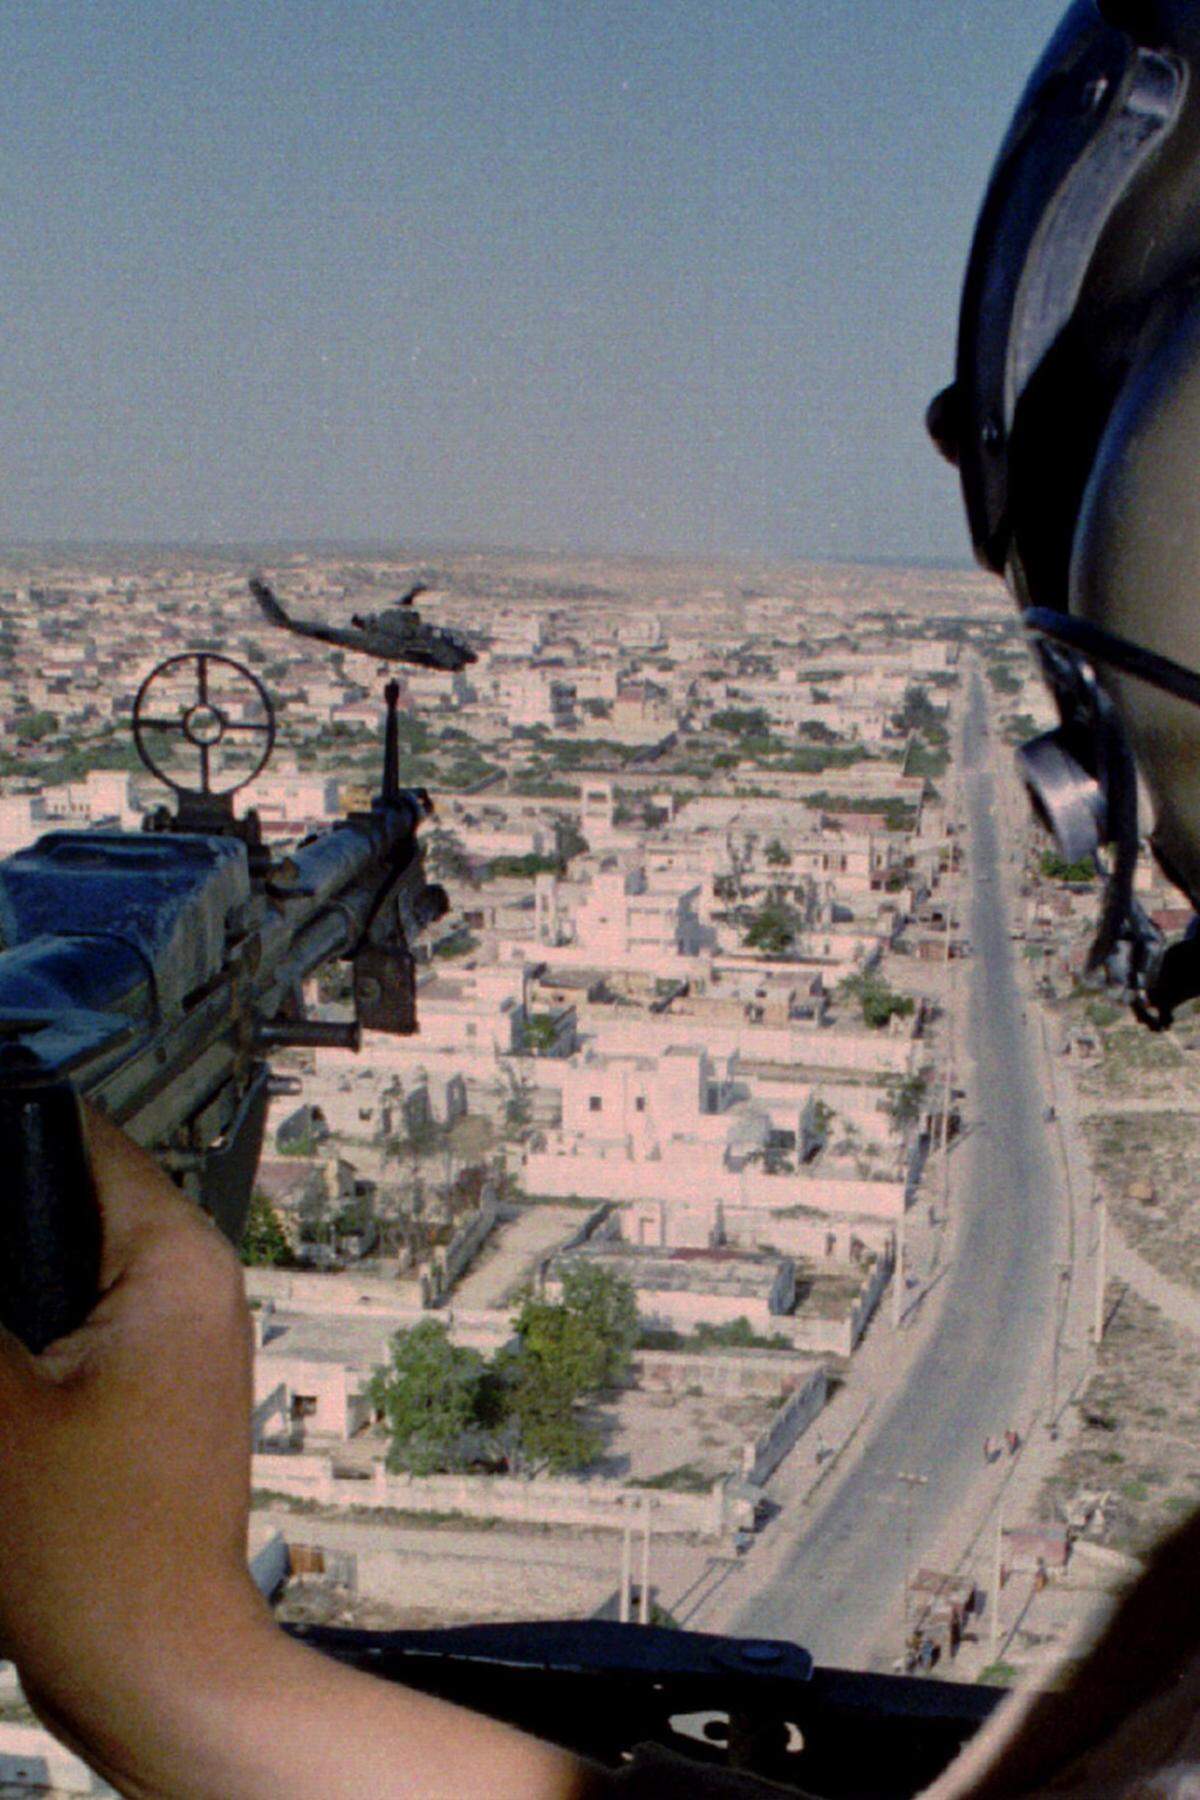 „Black Hawk Down“ - der Funkspruch, den US-Truppen in Somalia am 3. Oktober 1993 nach dem Abschuss eines Helikopters absetzen, markierte den Beginn einer Nacht, die als eine der größten Demütigungen in die Geschichte des US-Militärs eingehen sollte. 18 amerikanische Soldaten wurden bei der Schlacht von Mogadischu getötet, einige von ihnen von einer jubelnden Menge durch die Straßen geschleift. Die Fernsehbilder davon haben sich ins kollektive Gedächtnis Amerikas eingebrannt, das Debakel veränderte die Außenpolitik Washingtons grundlegend. (Bild: Black Hawk über Mogadischu, Oktober 1993)